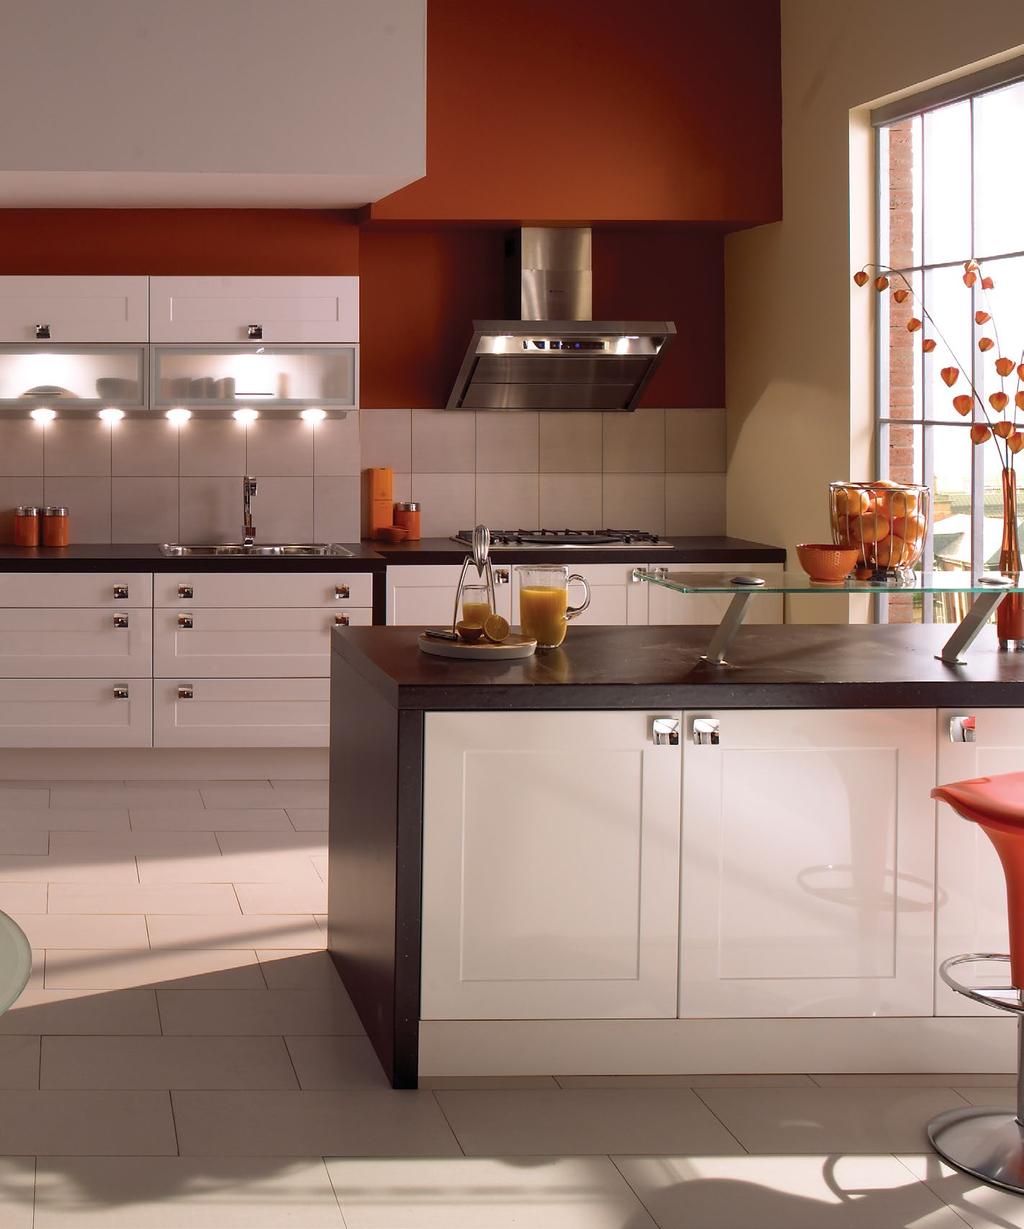 finish creates a stunning Shaker-style kitchen.